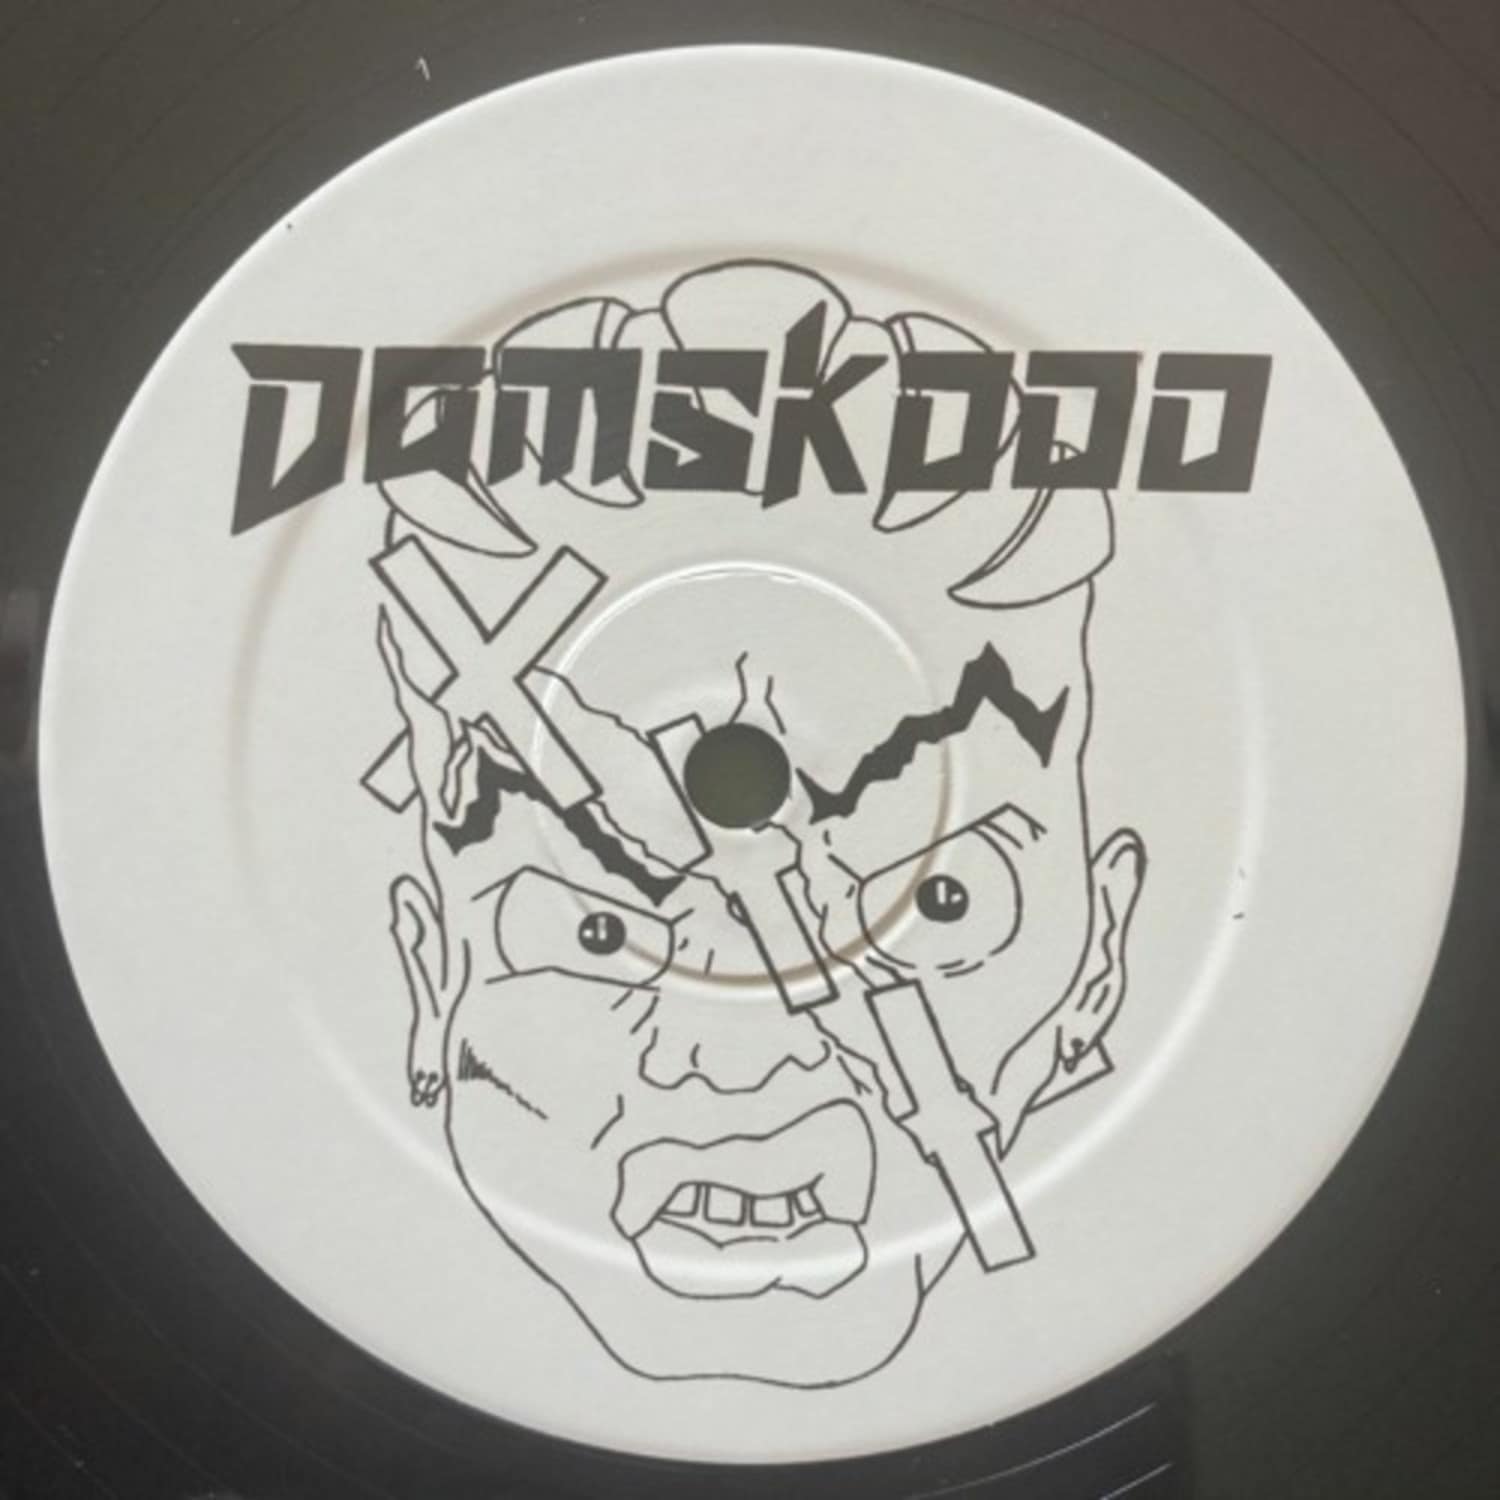 Daniele Temperilli - DAMSKO SCENE EP